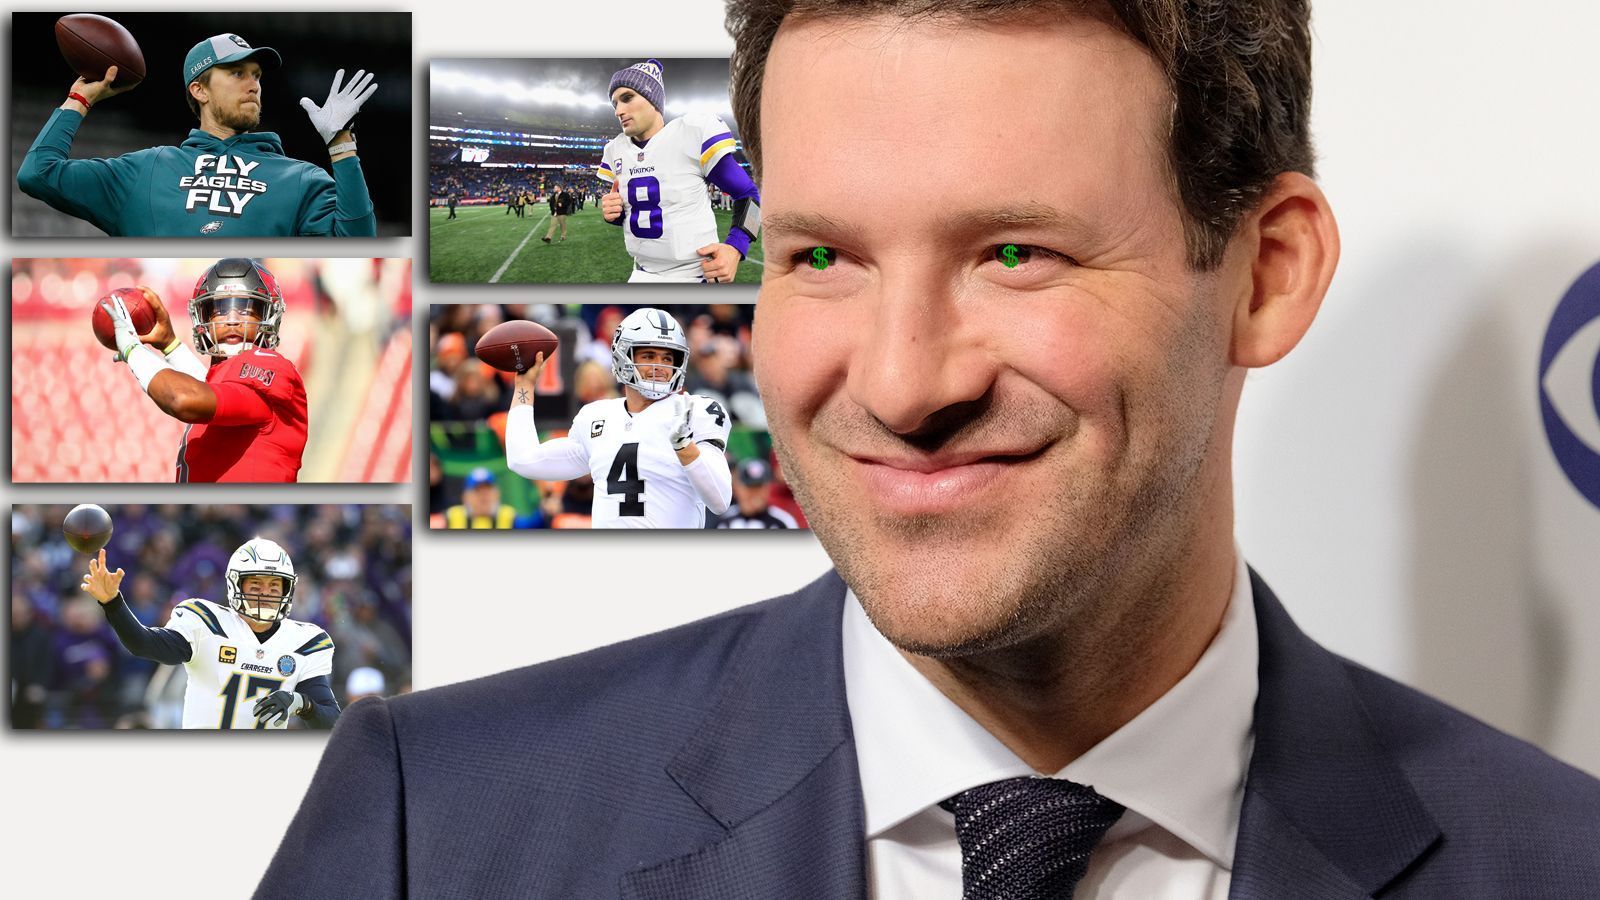 
                <strong>Tony Romo (CBS)</strong><br>
                Tony Romo soll laut "Sportingnews.com" zehn Millionen Dollar pro Jahr fordern - als TV-Experte von CBS. Sein bisheriger Dreijahres-Vertrag mit dem TV-Sender beschert ihm bis zum Ende der Saison 2019 immerhin schön zwölf Millionen Dollar. Nach dem Bericht soll der ehemalige Quarterback der Dallas Cowboys nun für eine Verlängerung als erster TV-Analyst eine achtstellige Summe pro Jahr fordern. Alternative: Romo könnte noch ein Jahr für CBs arbeiten und danach seinen Wert in der TV-Free-Agency testen. Sollte der Sender wirklich zehn Millionen pro Jahr locker machen, würde Romo mehr Cash verdienen - als die Quarterback-Corps von zwölf NFL-Teams! ran.de zeigt, was die 32 NFL-Teams ihren Quarterbacks 2019 als Active Cash zahlen (Quelle: Spotrac.com).
              